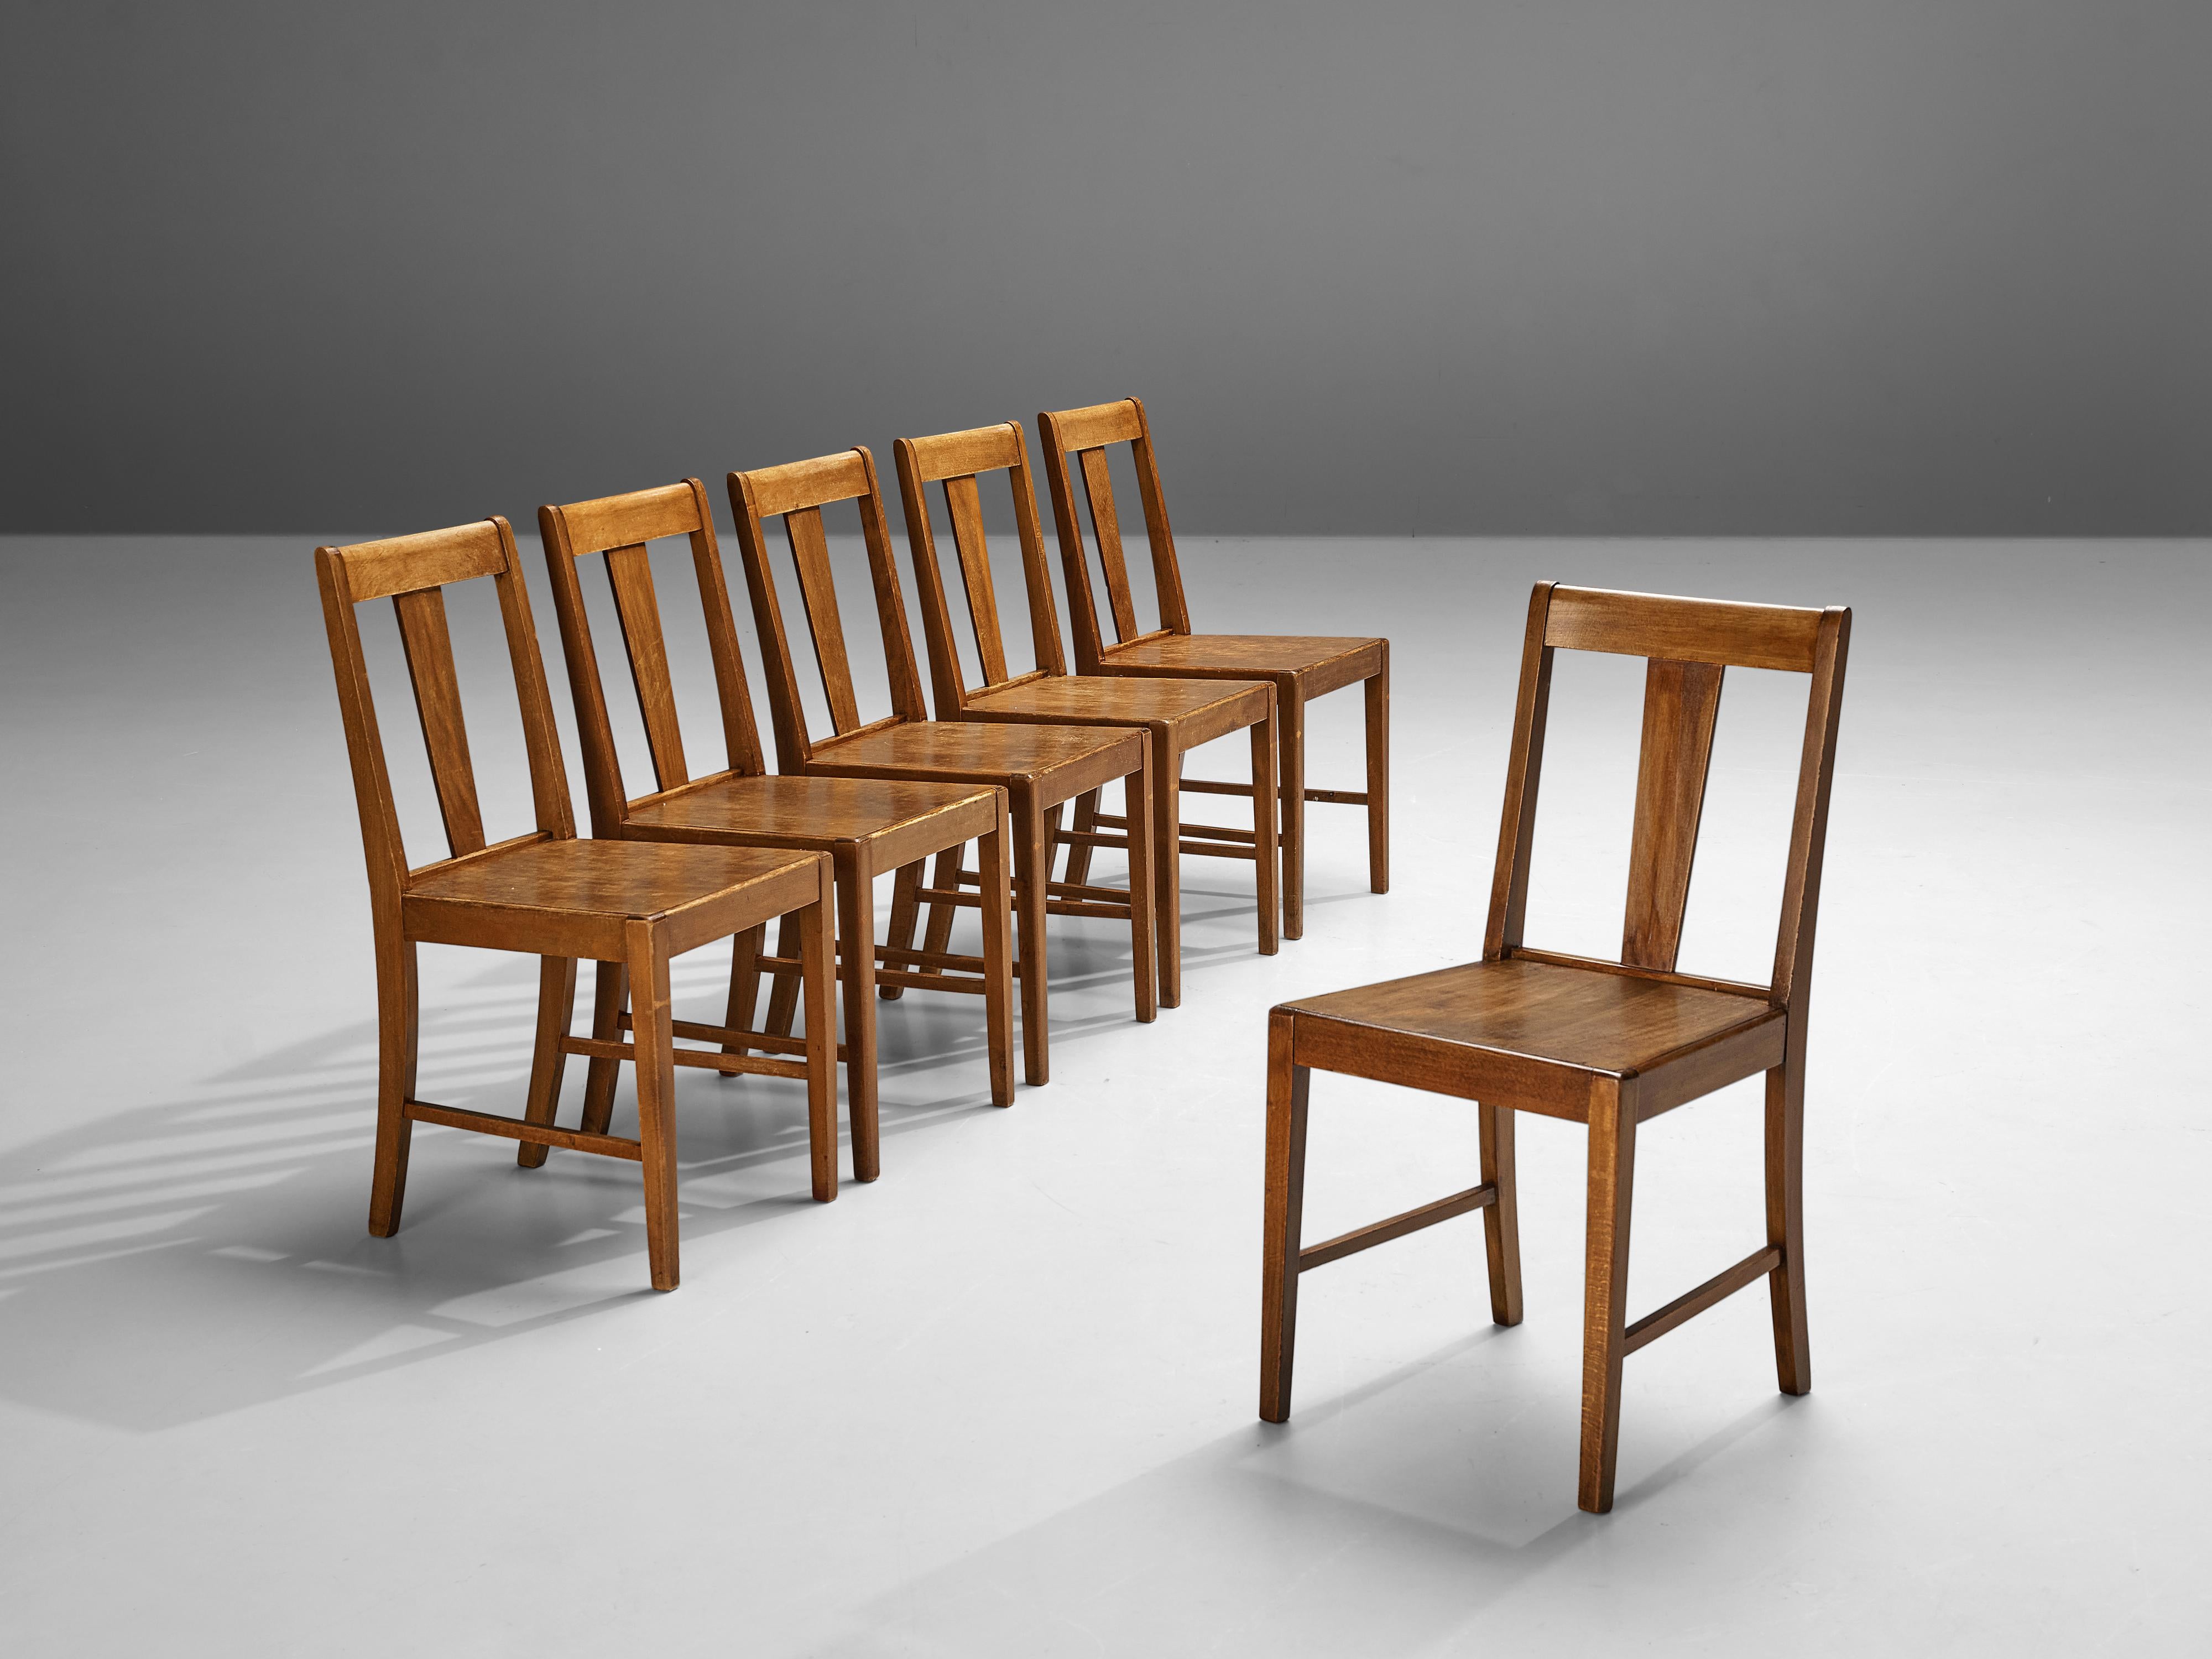 Chaises de salle à manger, hêtre teinté, Pays-Bas, années 1940

Cet ensemble de chaises de salle à manger est conçu avec un dossier parfaitement équilibré et un cadre général robuste. La structure robuste est évidente dans les pieds solidement